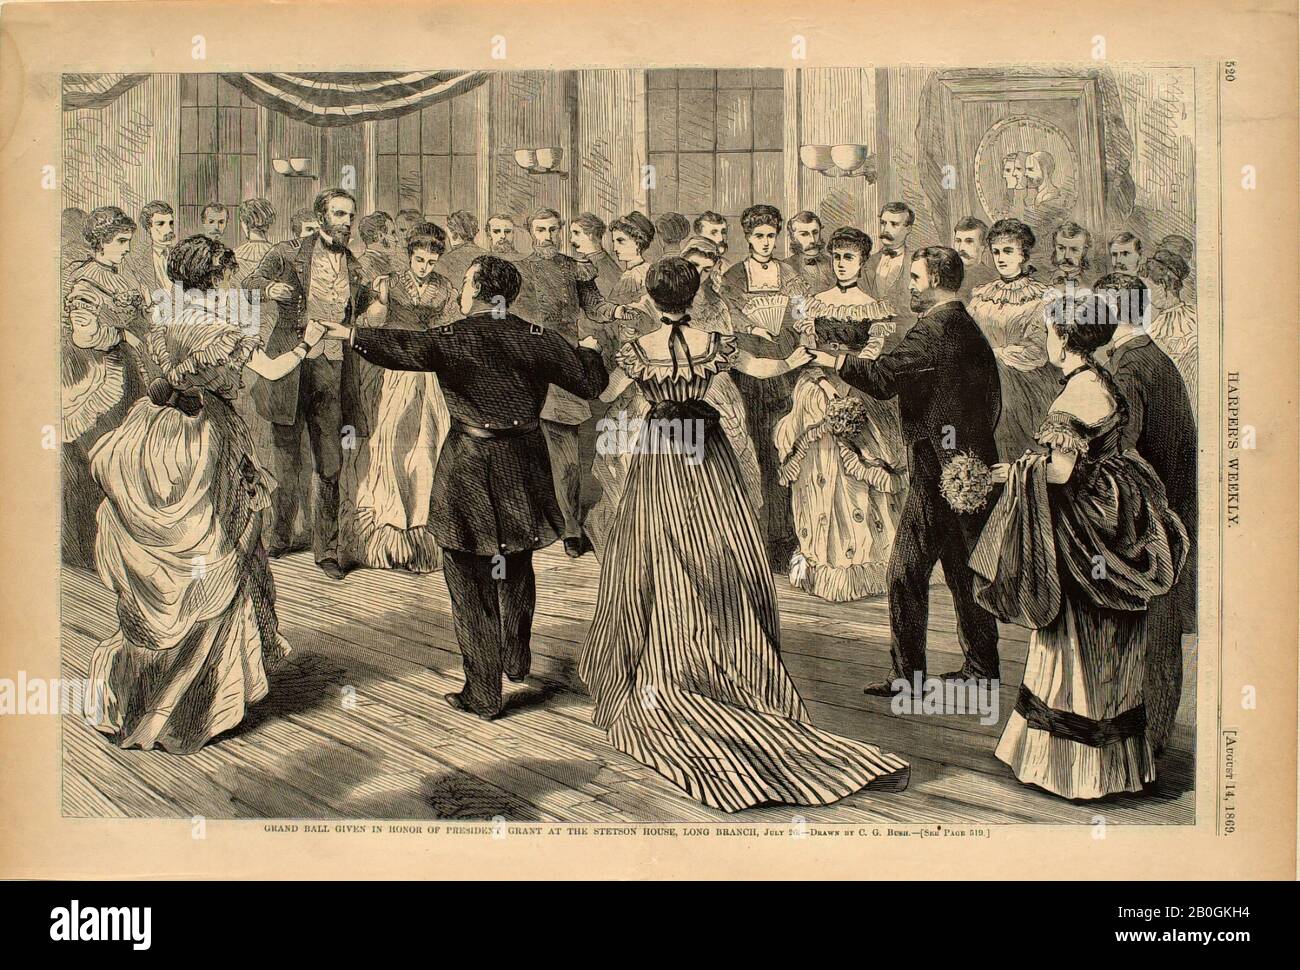 Charles Green Bush, amerikanisch, zwischen dem 26. Juli 1869 und dem 26. Juli 1869, Grand Ball Zu Ehren des Präsidenten Grant im Stetson House, Wood Gravur auf Papier, Bild: 9 1/8 x 13 7/8 Zoll. (23,2 x 35,2 cm Stockfoto